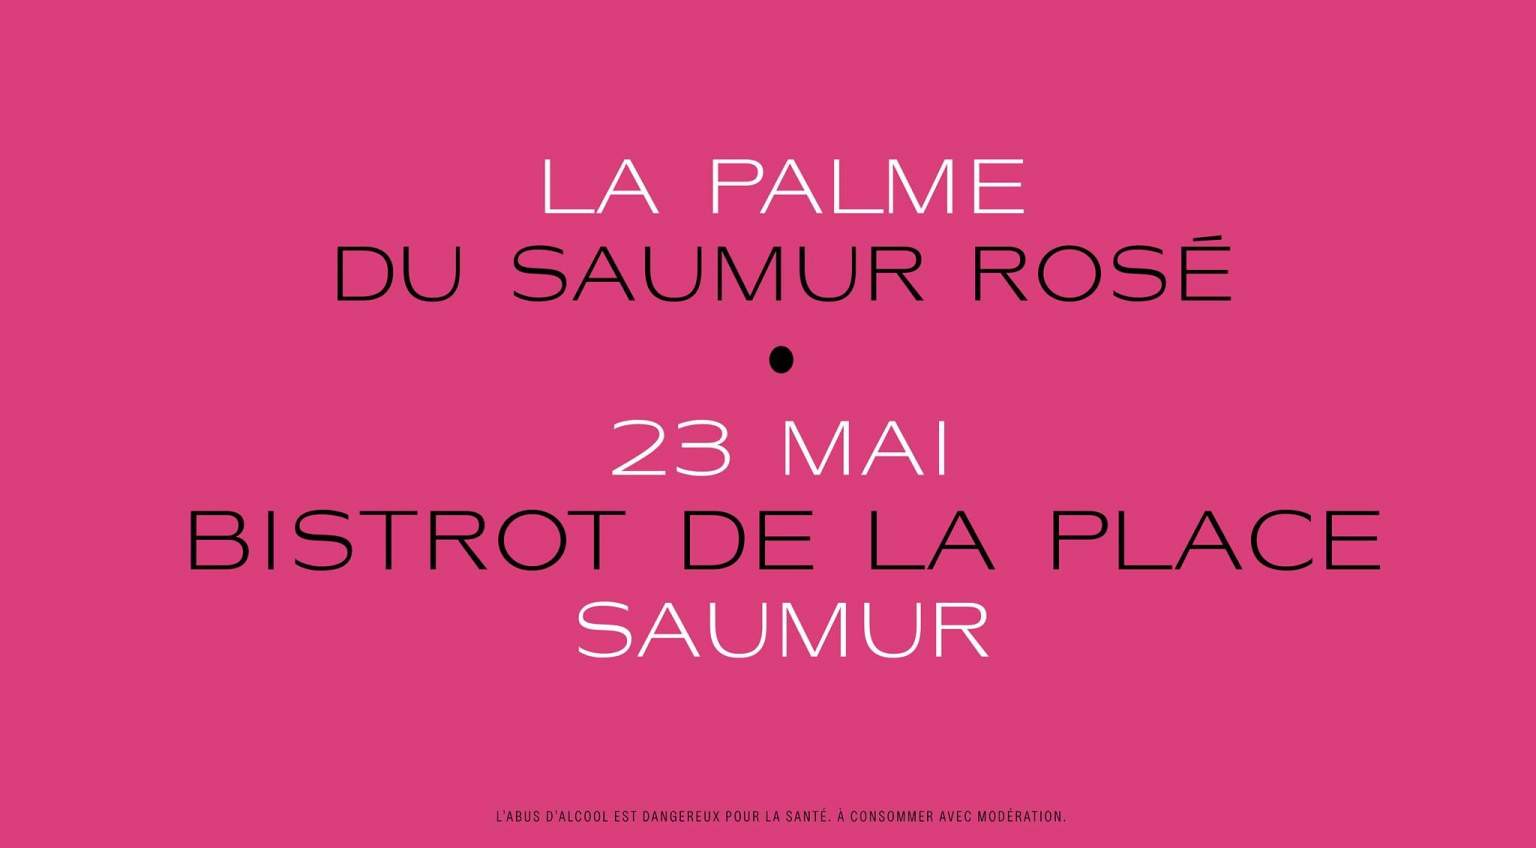 Cette année encore, venez assister à la Palme du Saumur Rosé au Bistrot de la Place !